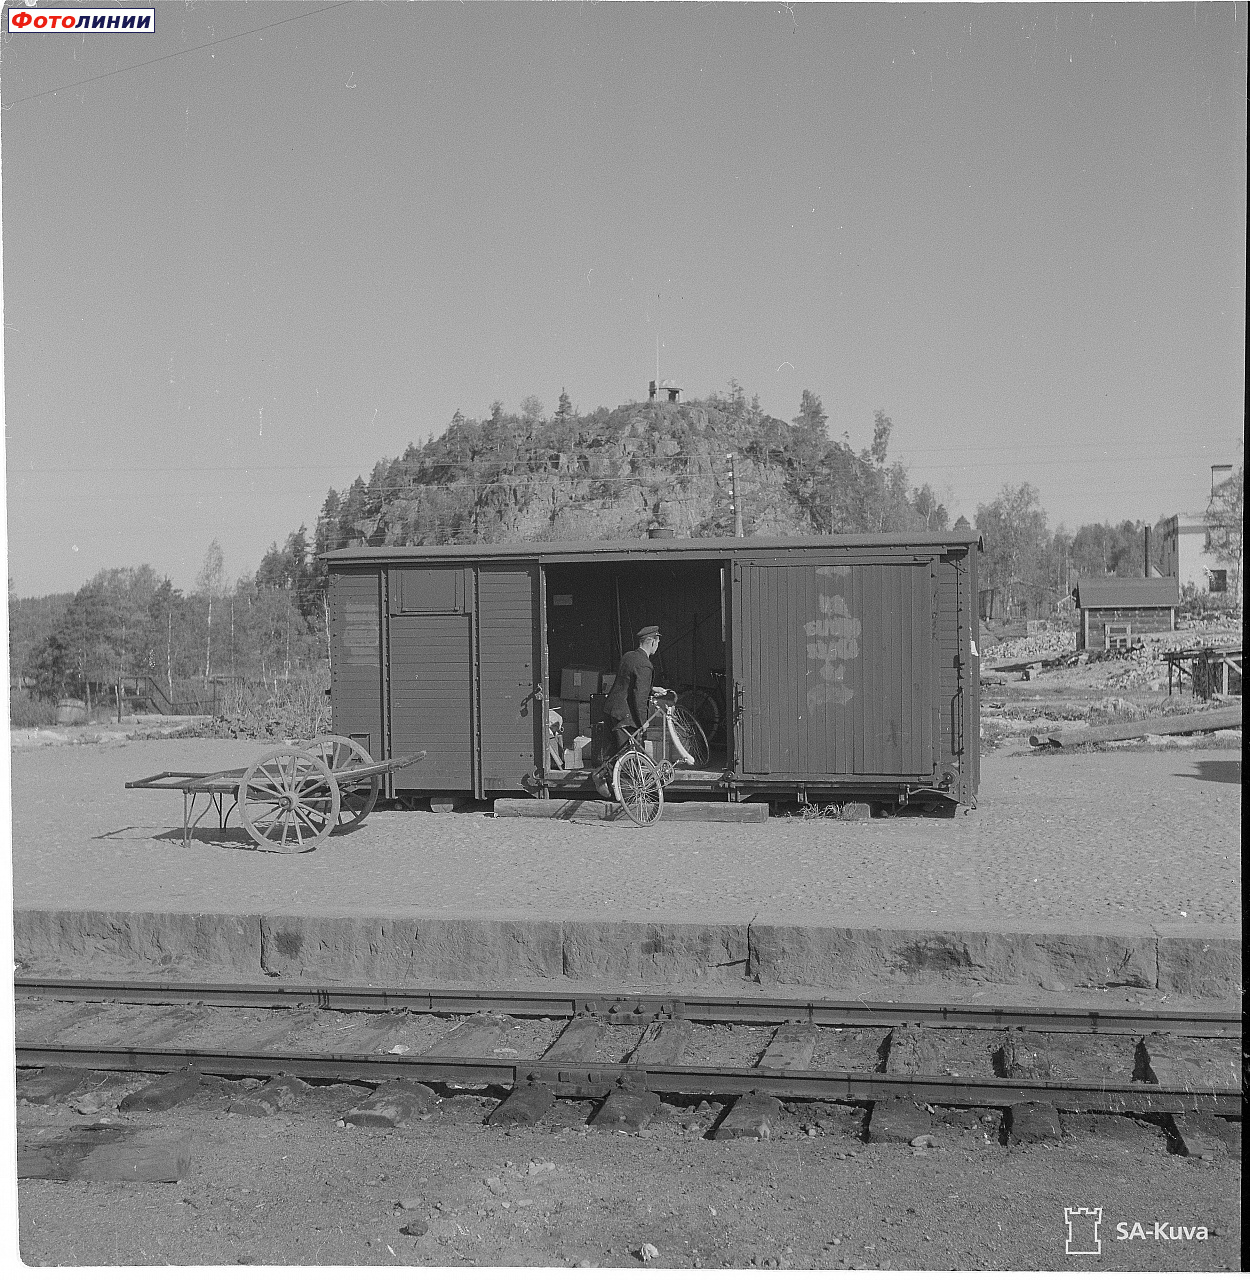 Повреждённый во время Зимней войны вагон используется в качестве хранилища при станции. На заднем фоне -- знаменитая гора Линнавуори